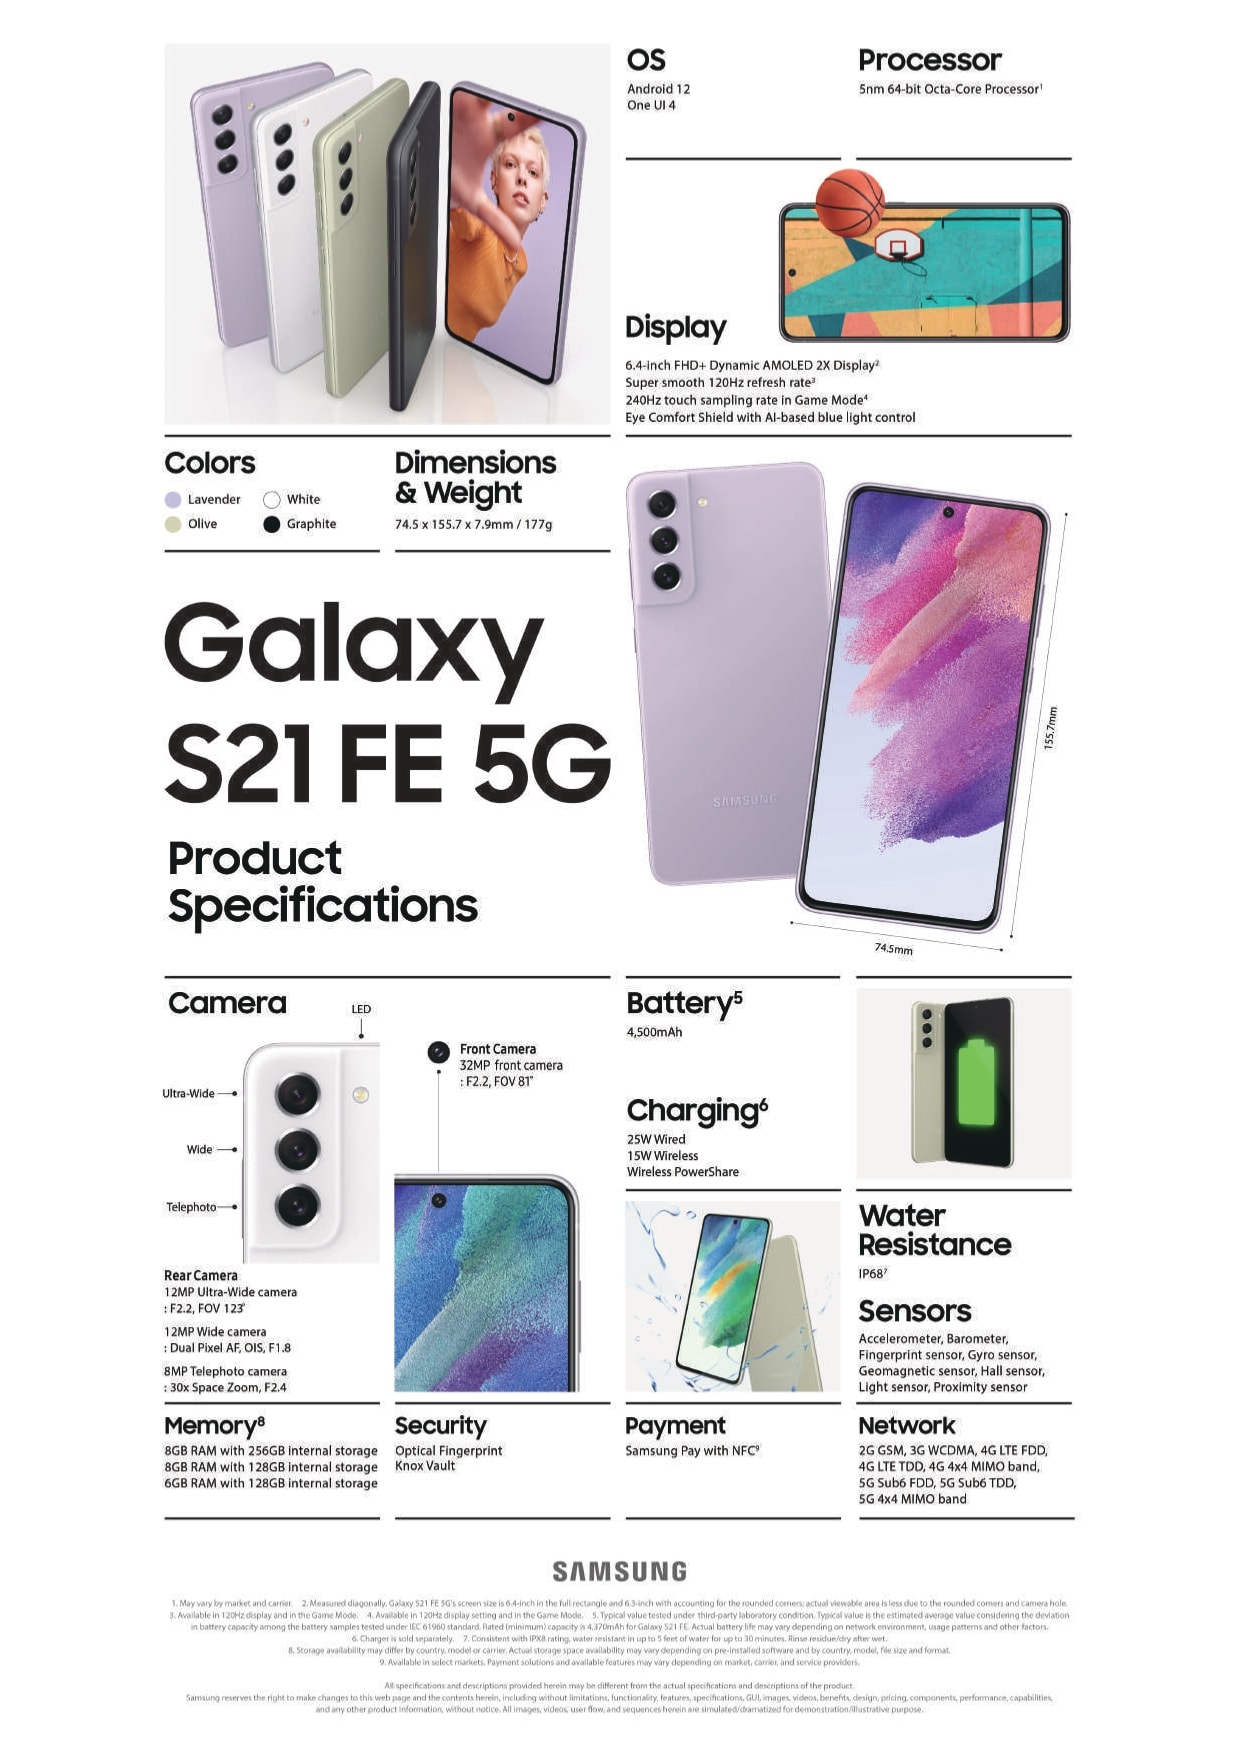 Samsung Galaxy S21 FE aparece en un manual filtrado confirmando su diseño y  características clave